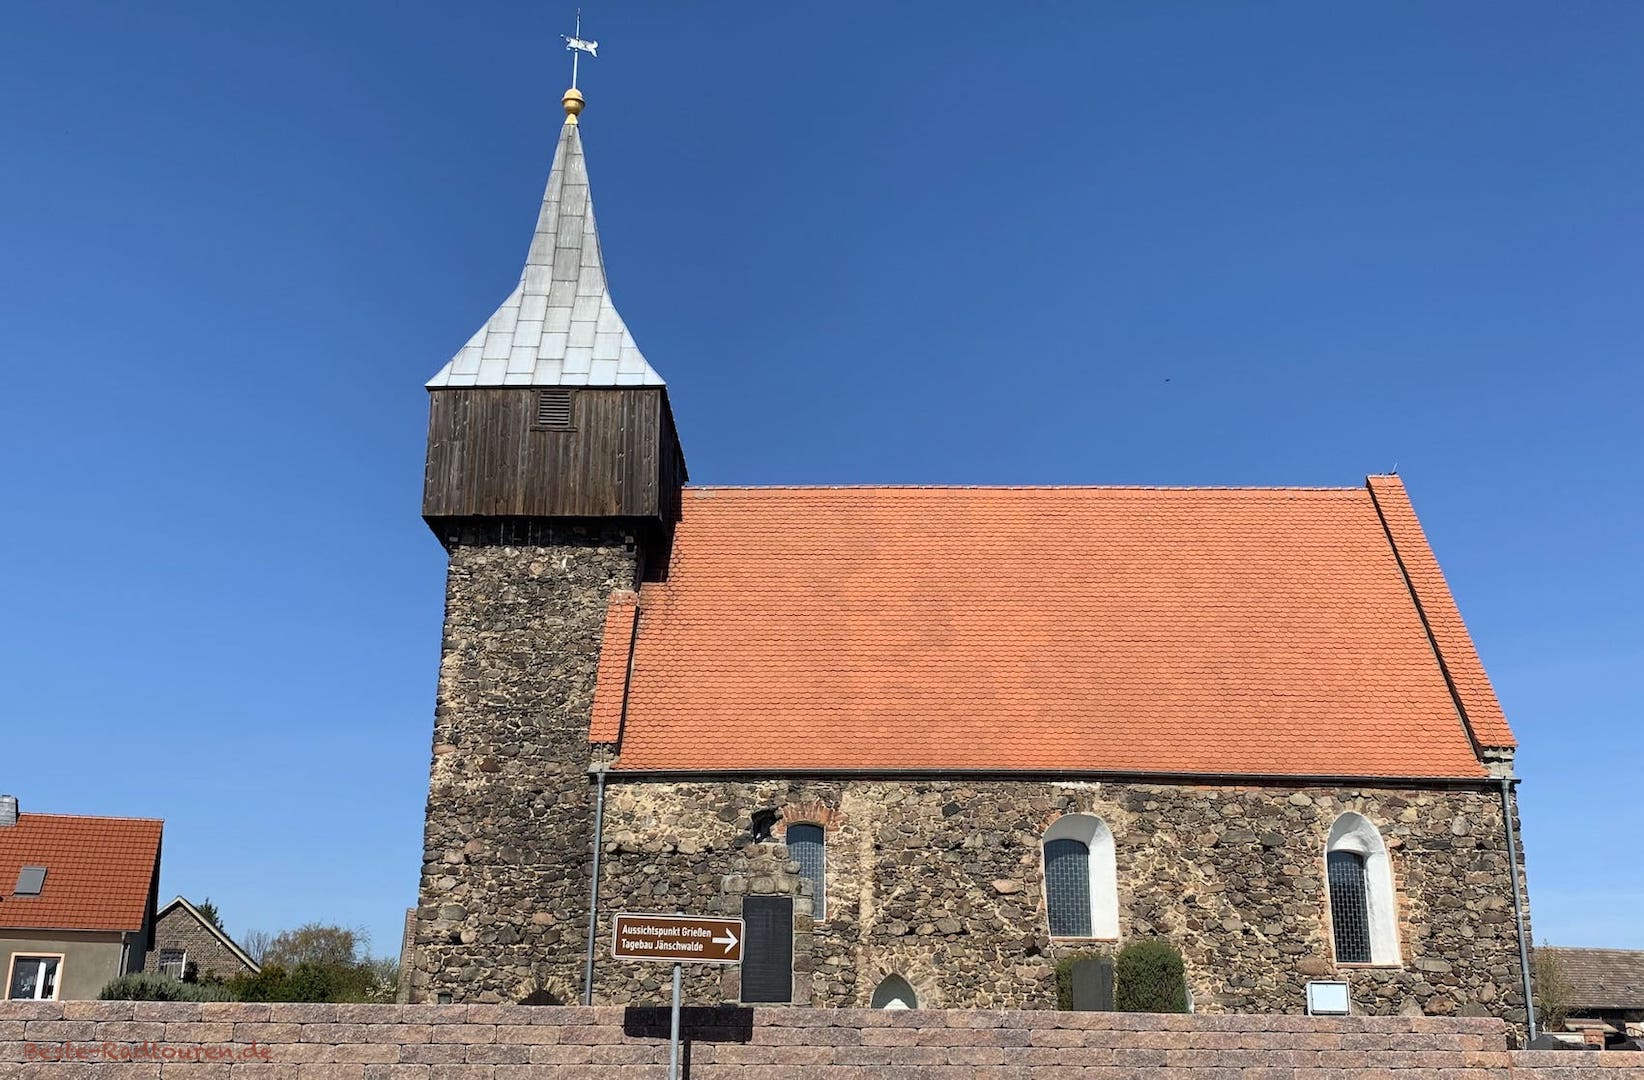 Dorfkirche Grießen mit Wegweiser: "Aussichtspunkt Grießen Tagebau Jänschwalde"